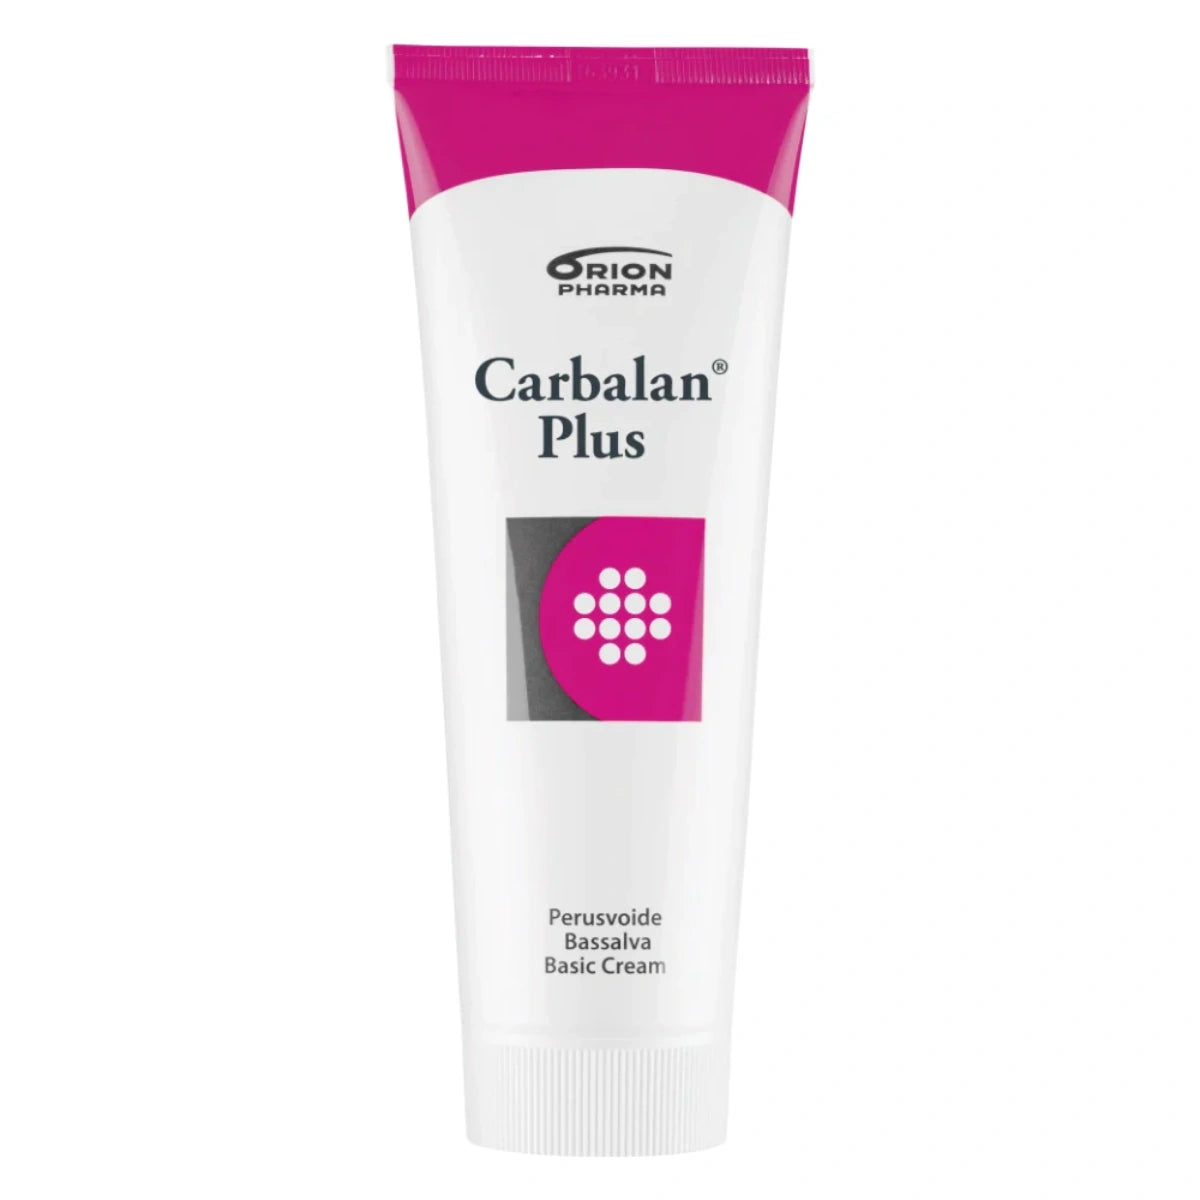 CARBALAN Plus perusvoide 200 g  normaalille, kuivalle ja atooppiselle iholle